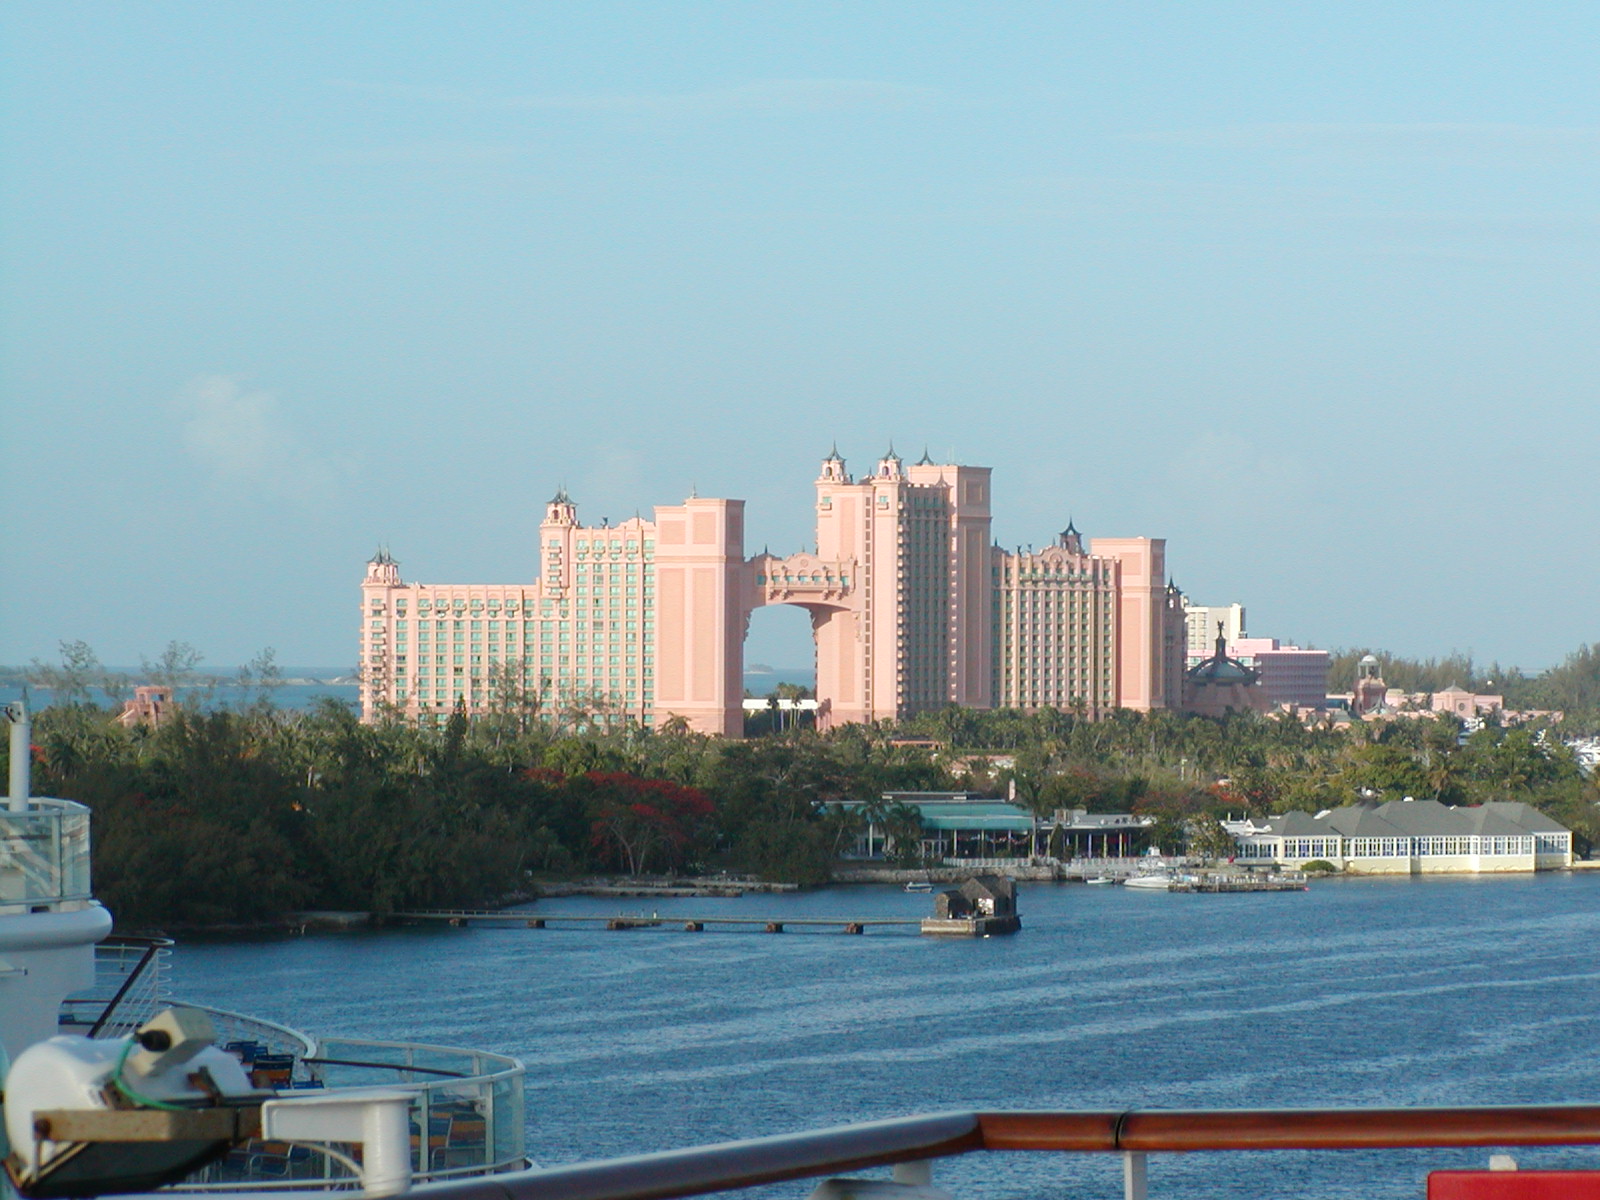 The Atlantis in Nassau